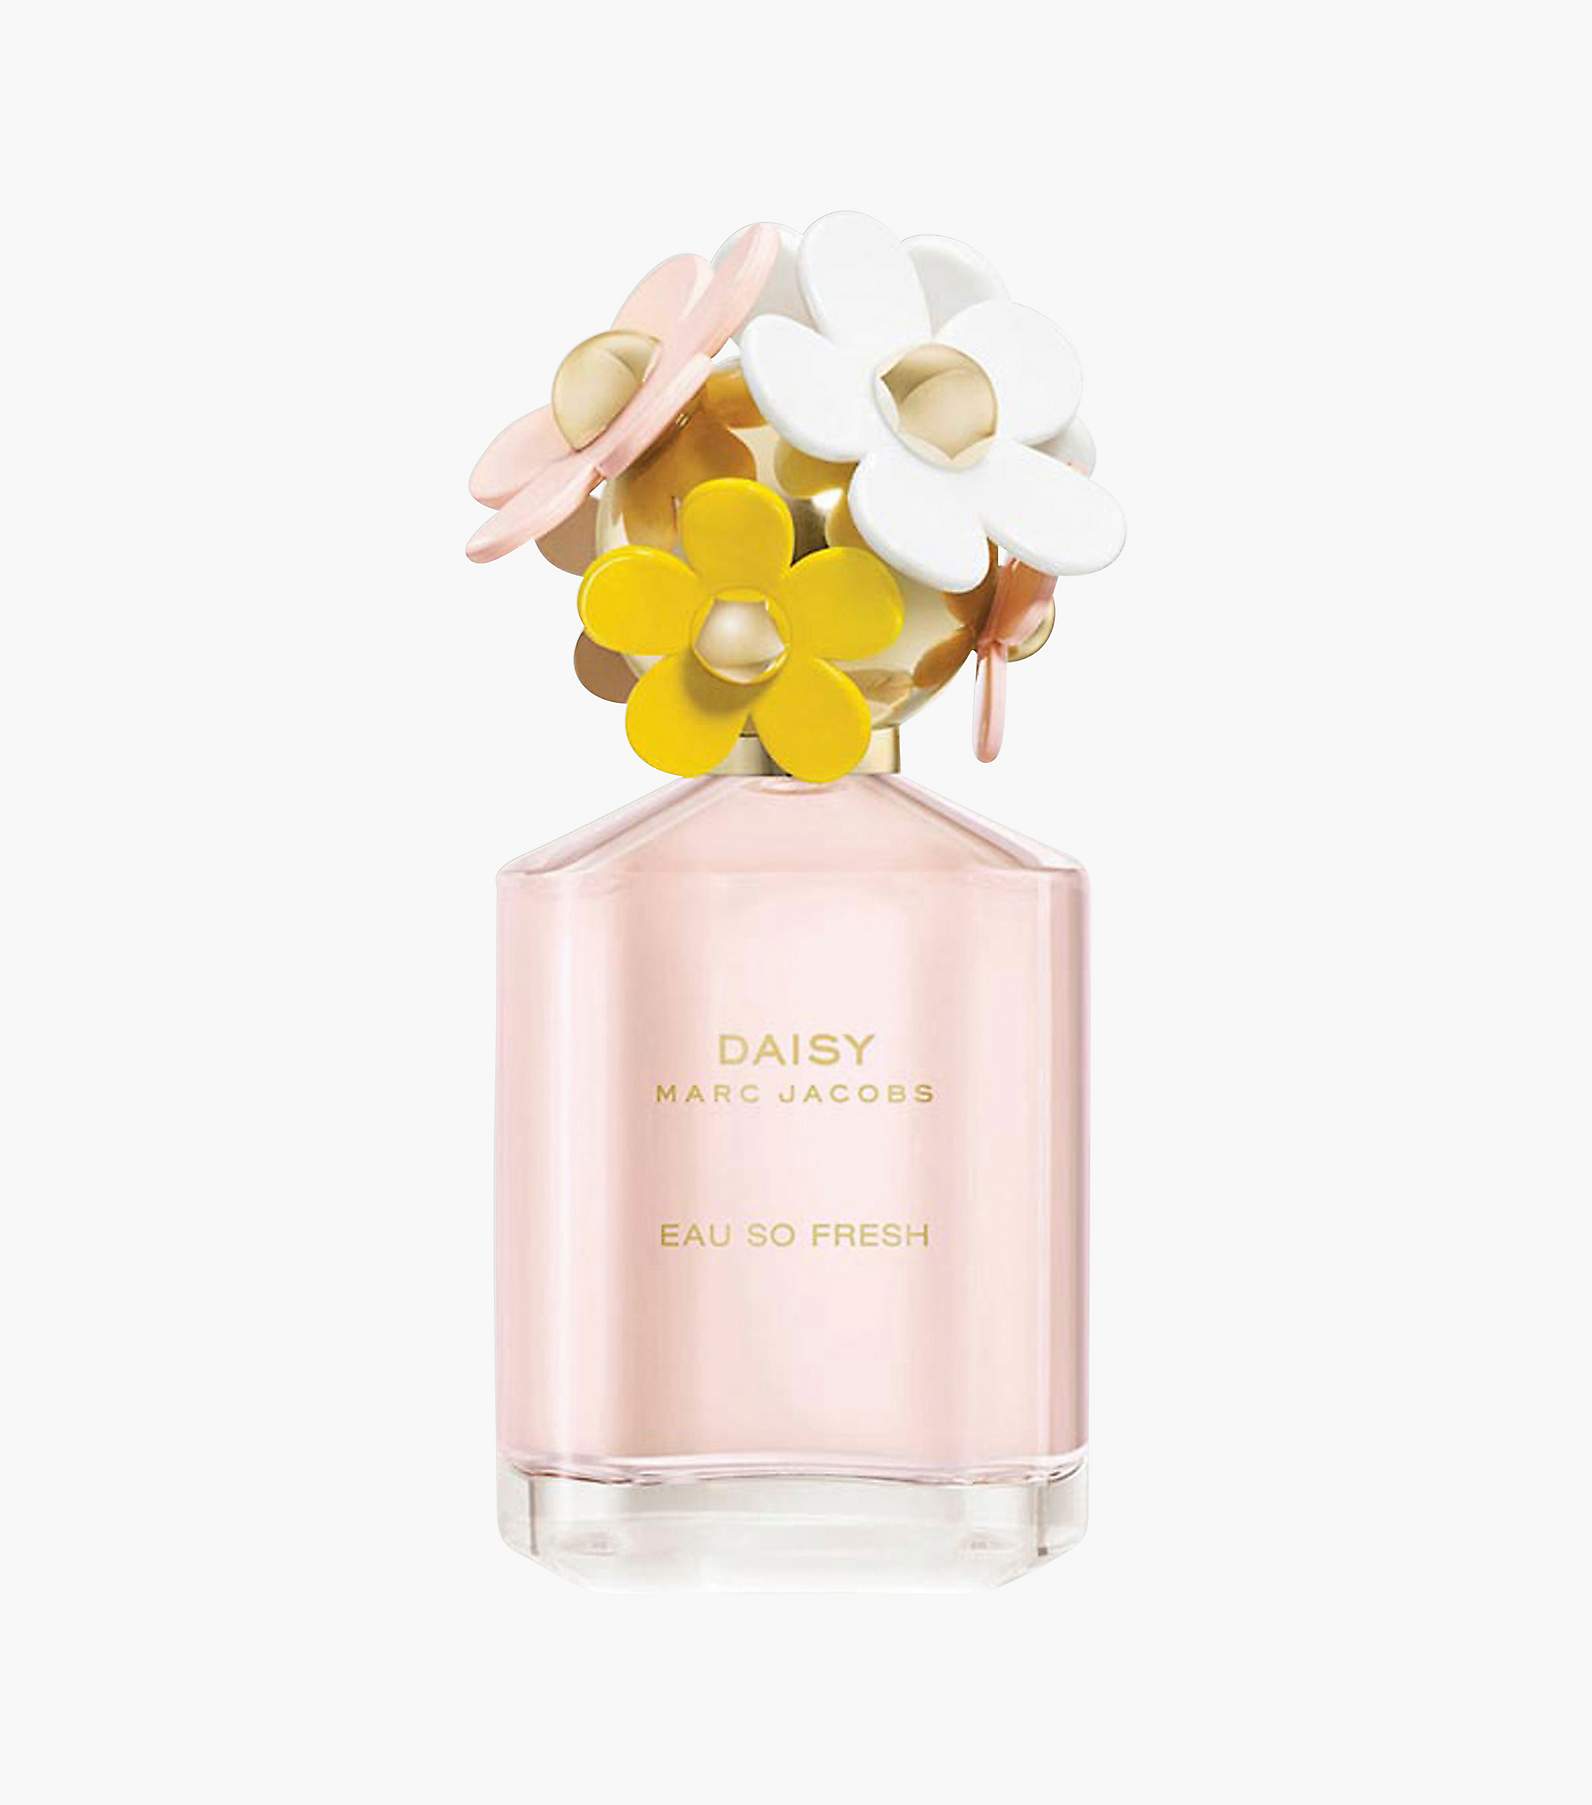 Daisy Eau So Fresh Eau de Toilette Perfume 4.2oz